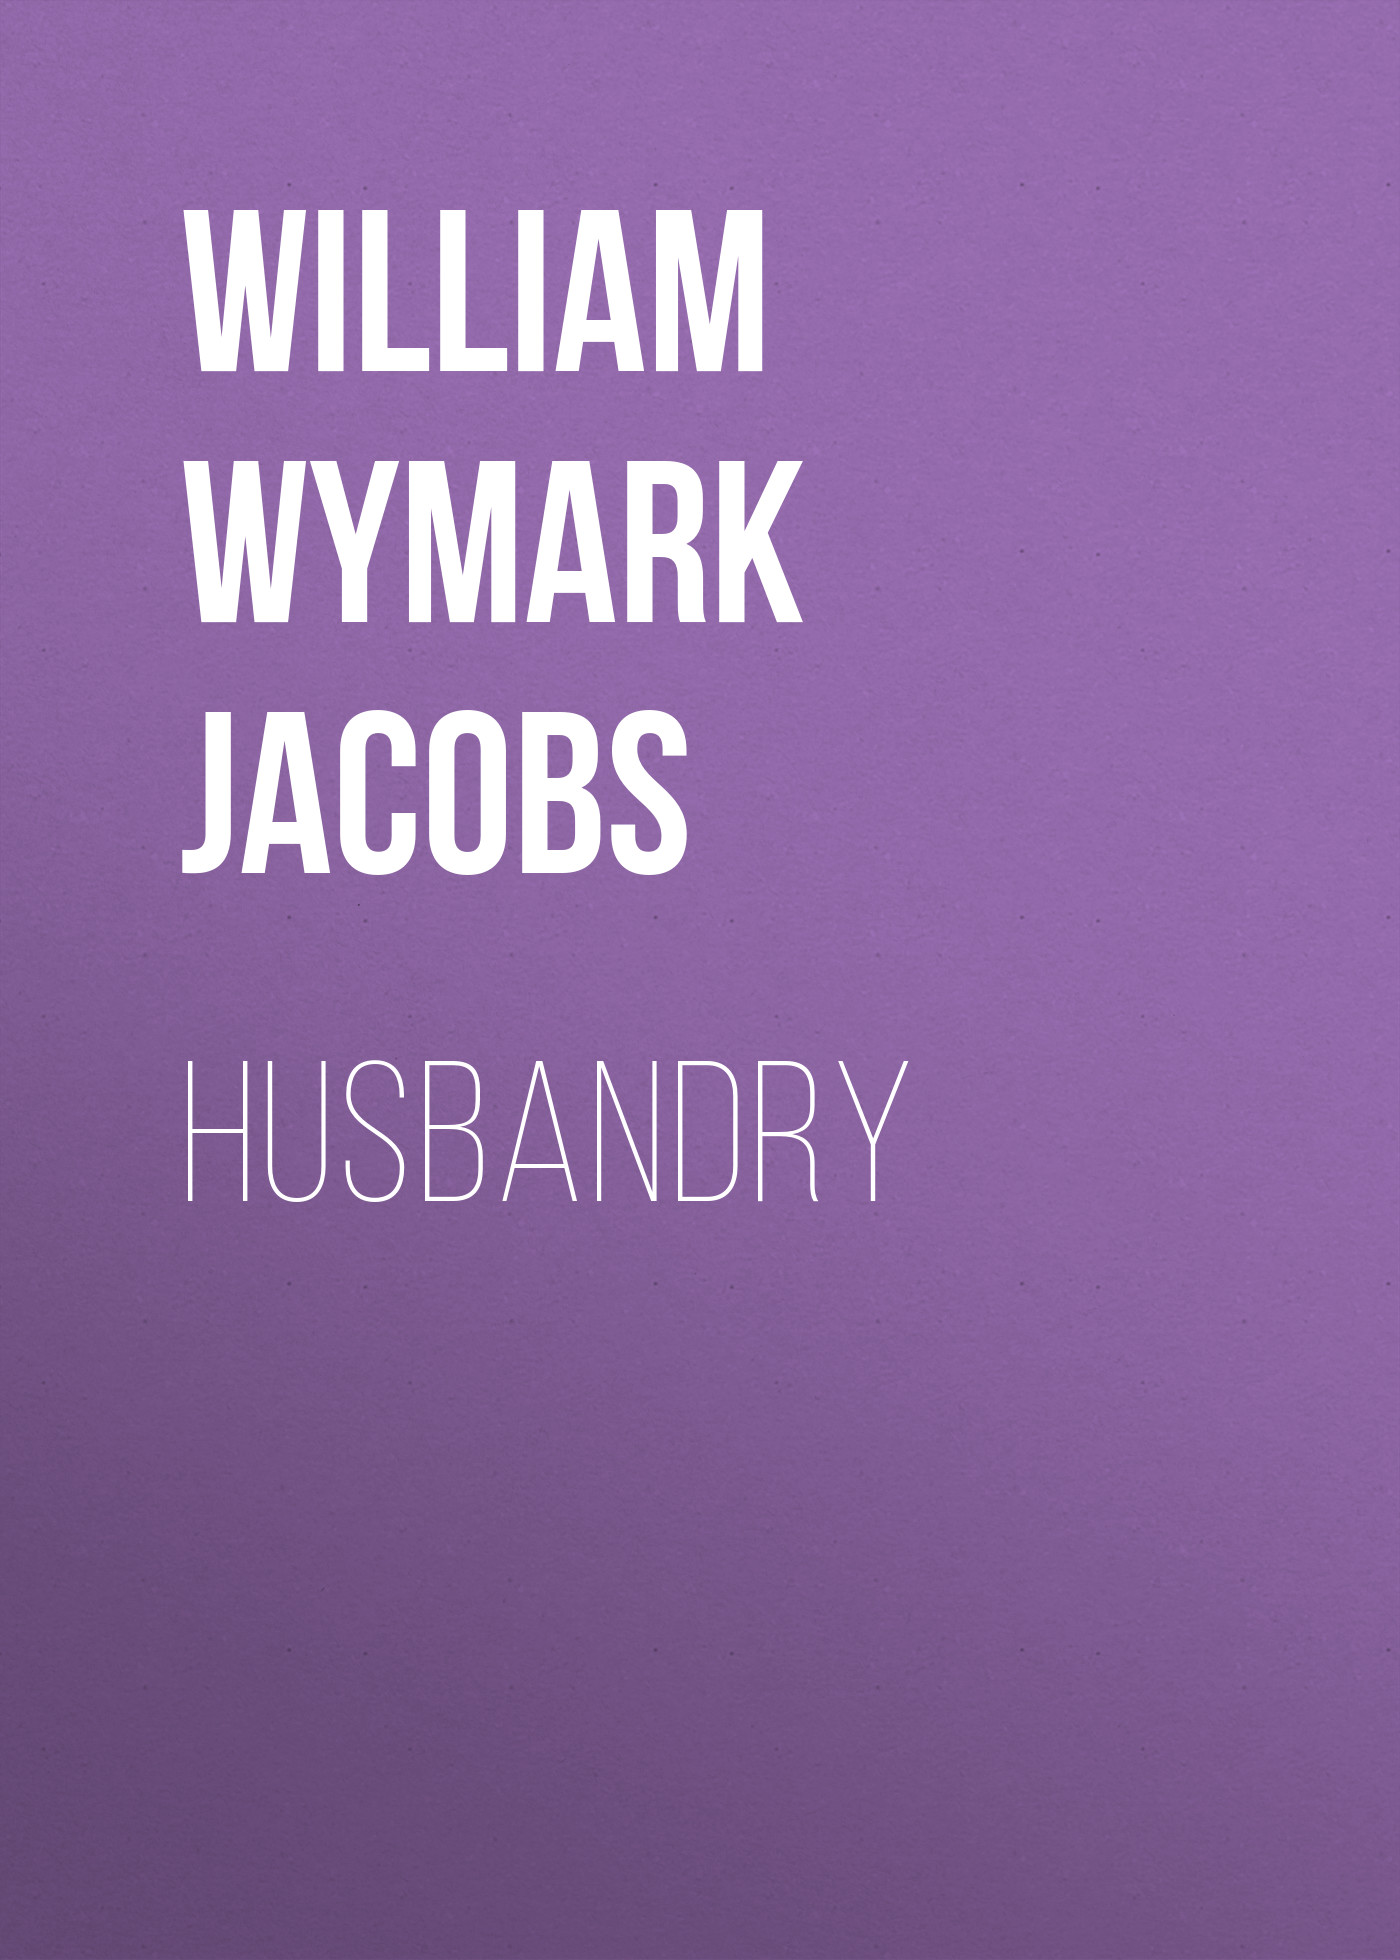 Книга Husbandry из серии , созданная William Wymark Jacobs, может относится к жанру Зарубежная классика, Зарубежная старинная литература. Стоимость электронной книги Husbandry с идентификатором 34842830 составляет 0 руб.